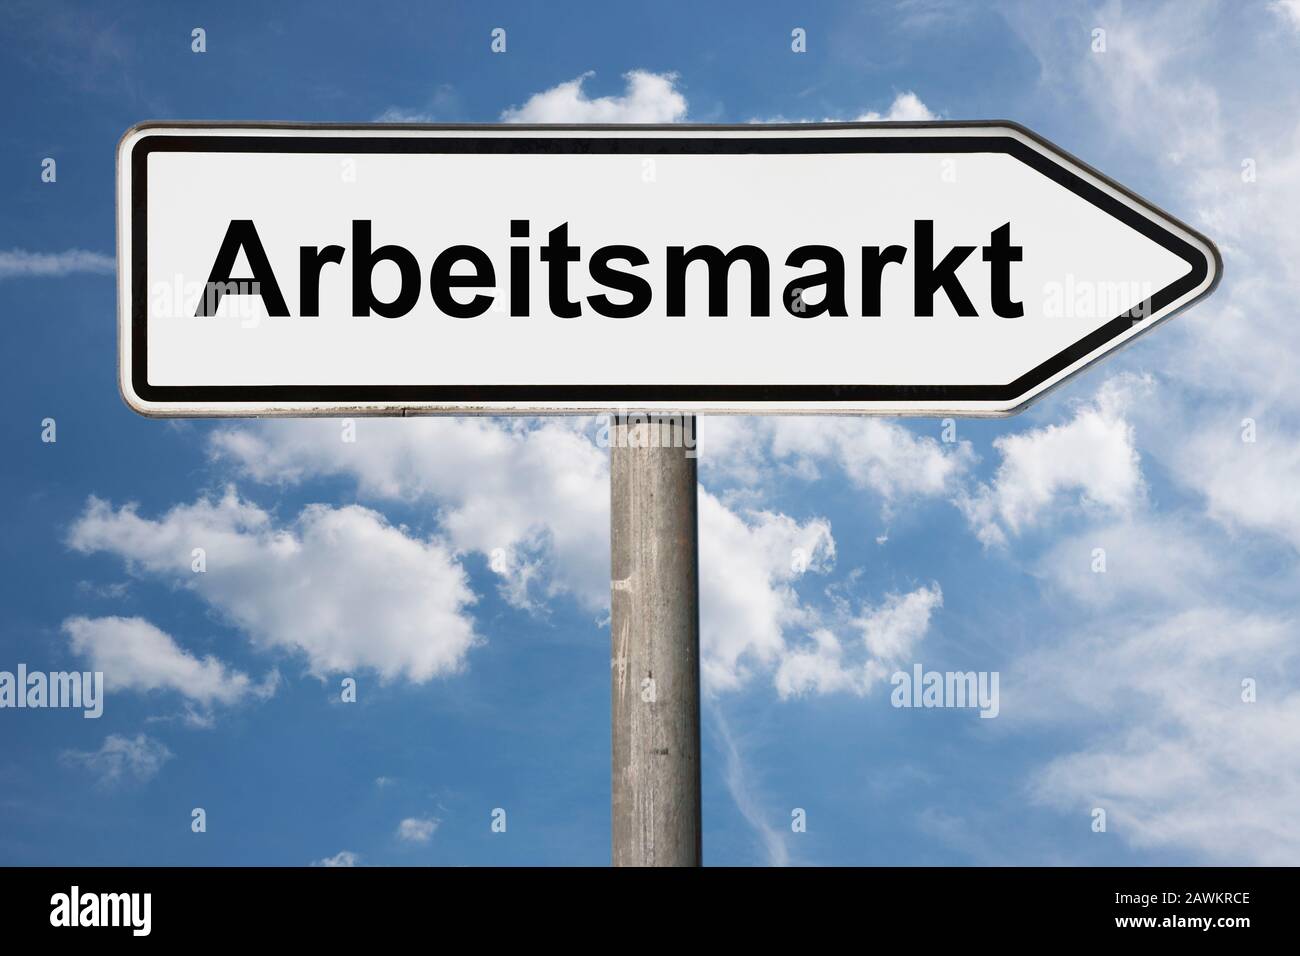 Foto de detalle de un cartel con la inscripción Arbeitsmarkt (mercado de trabajo) Foto de stock